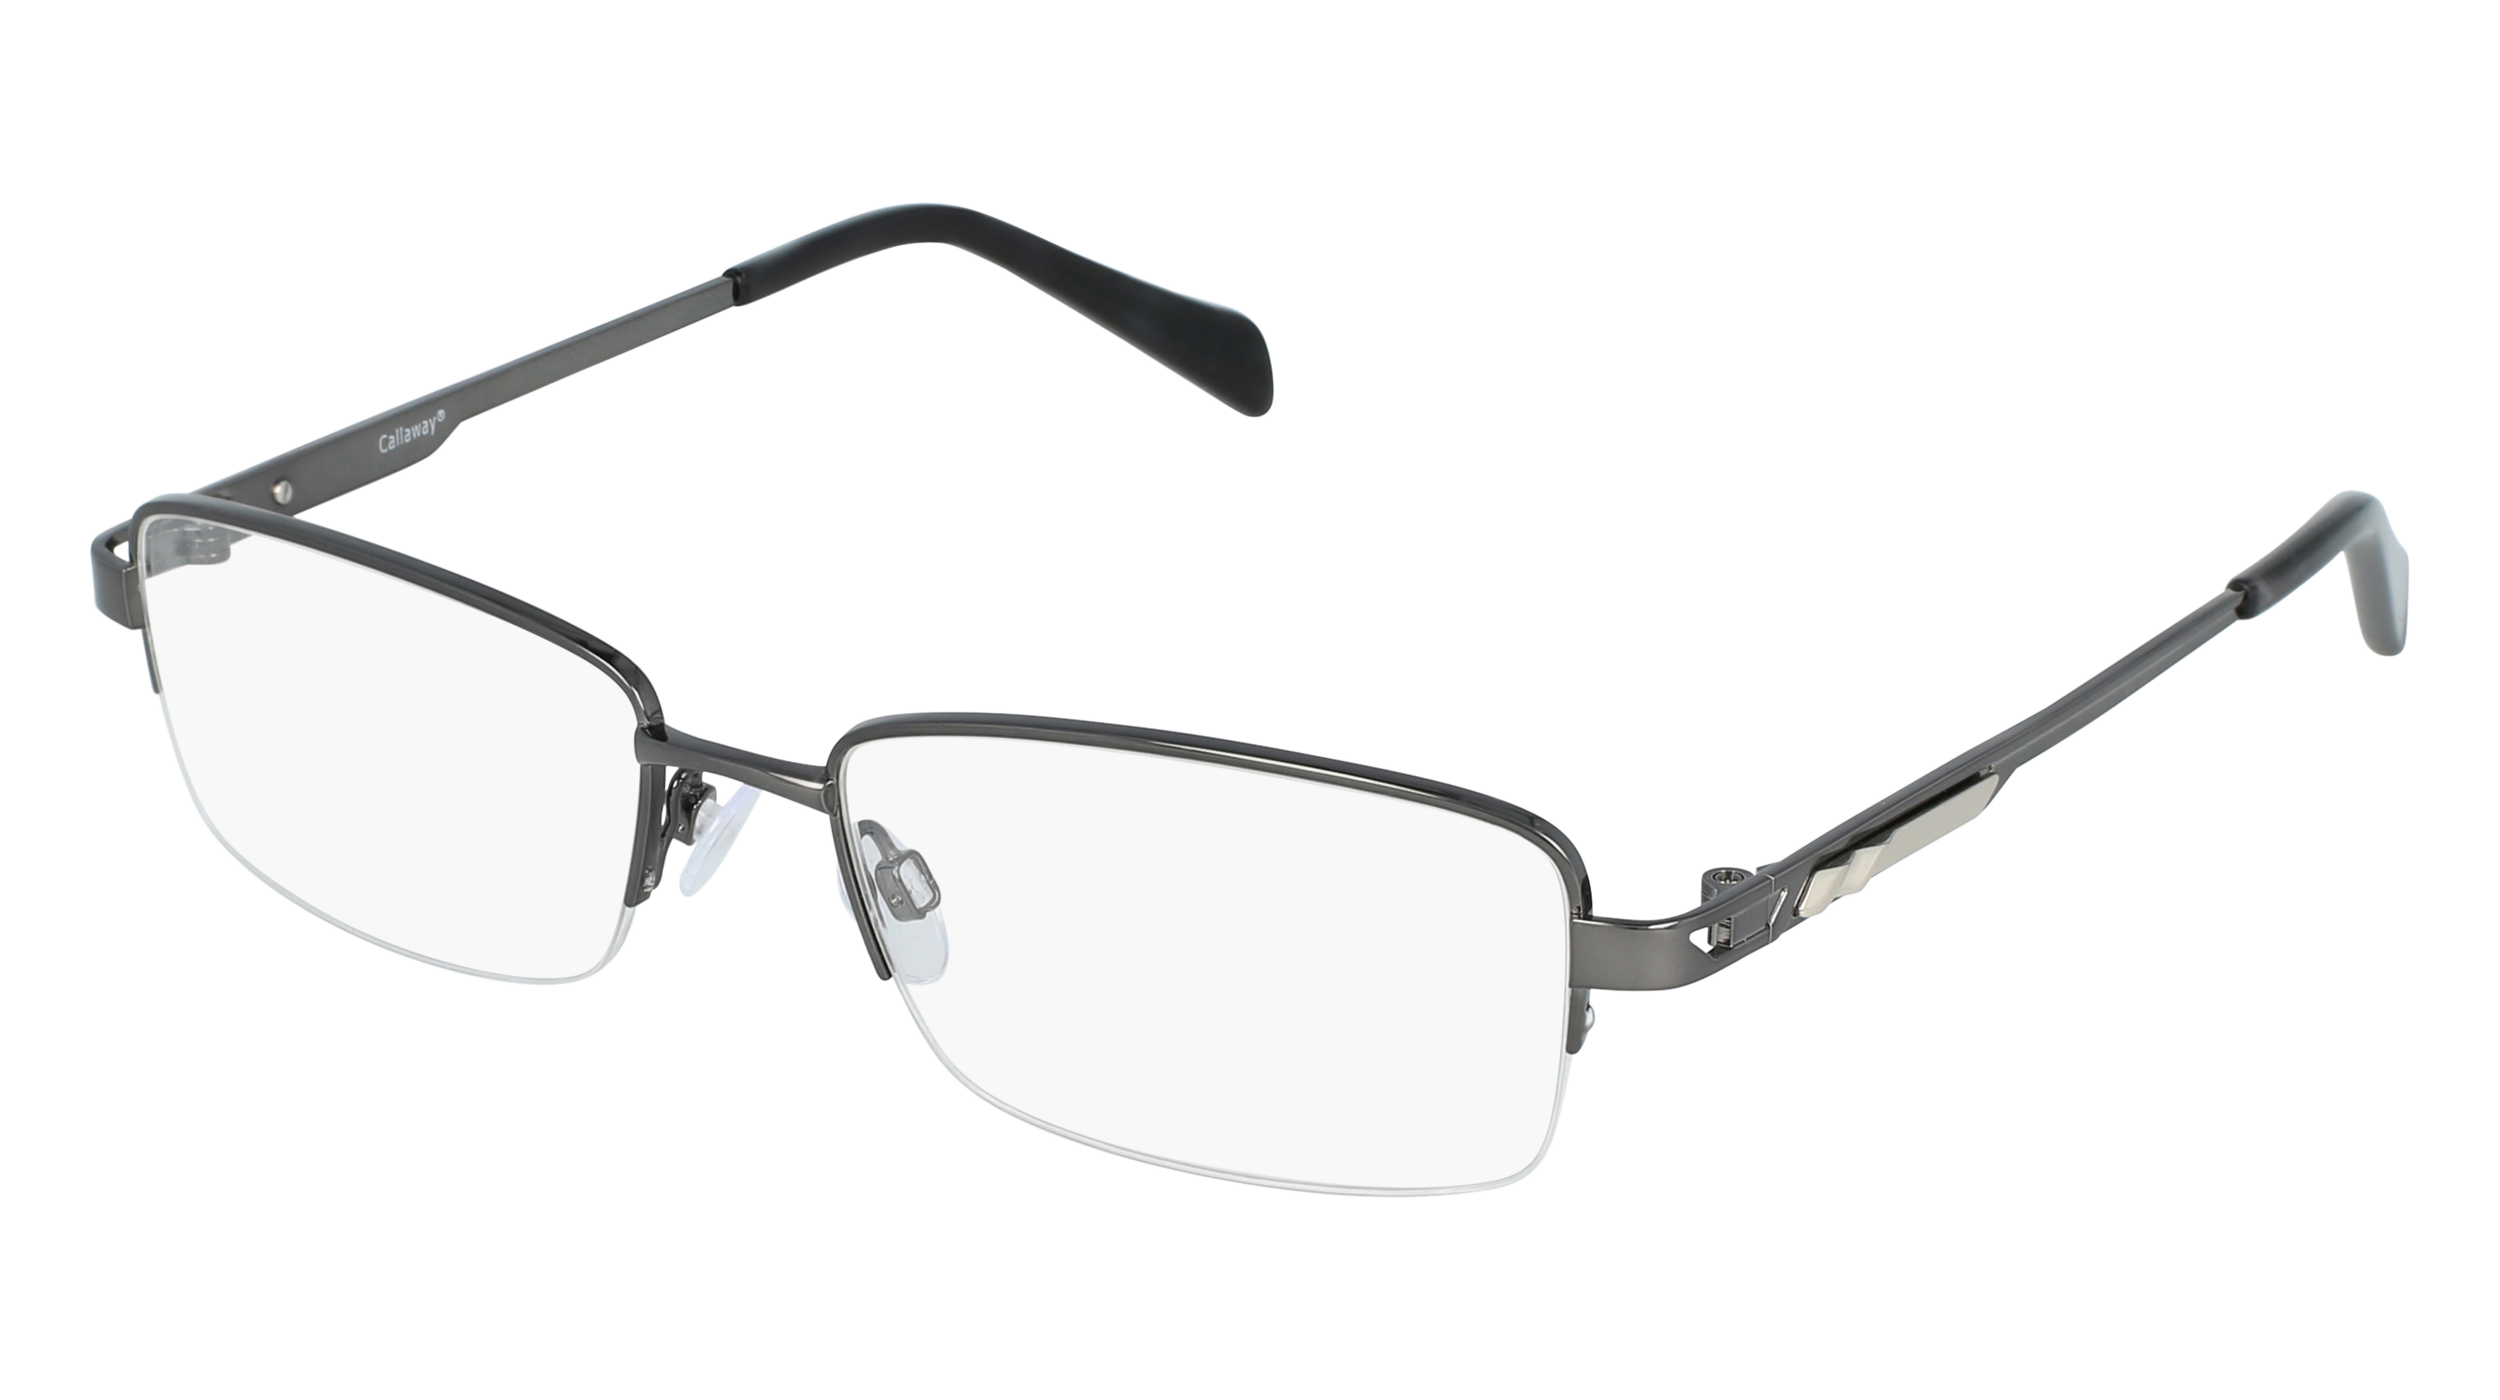 C C 17 men's eyeglasses (from the side)